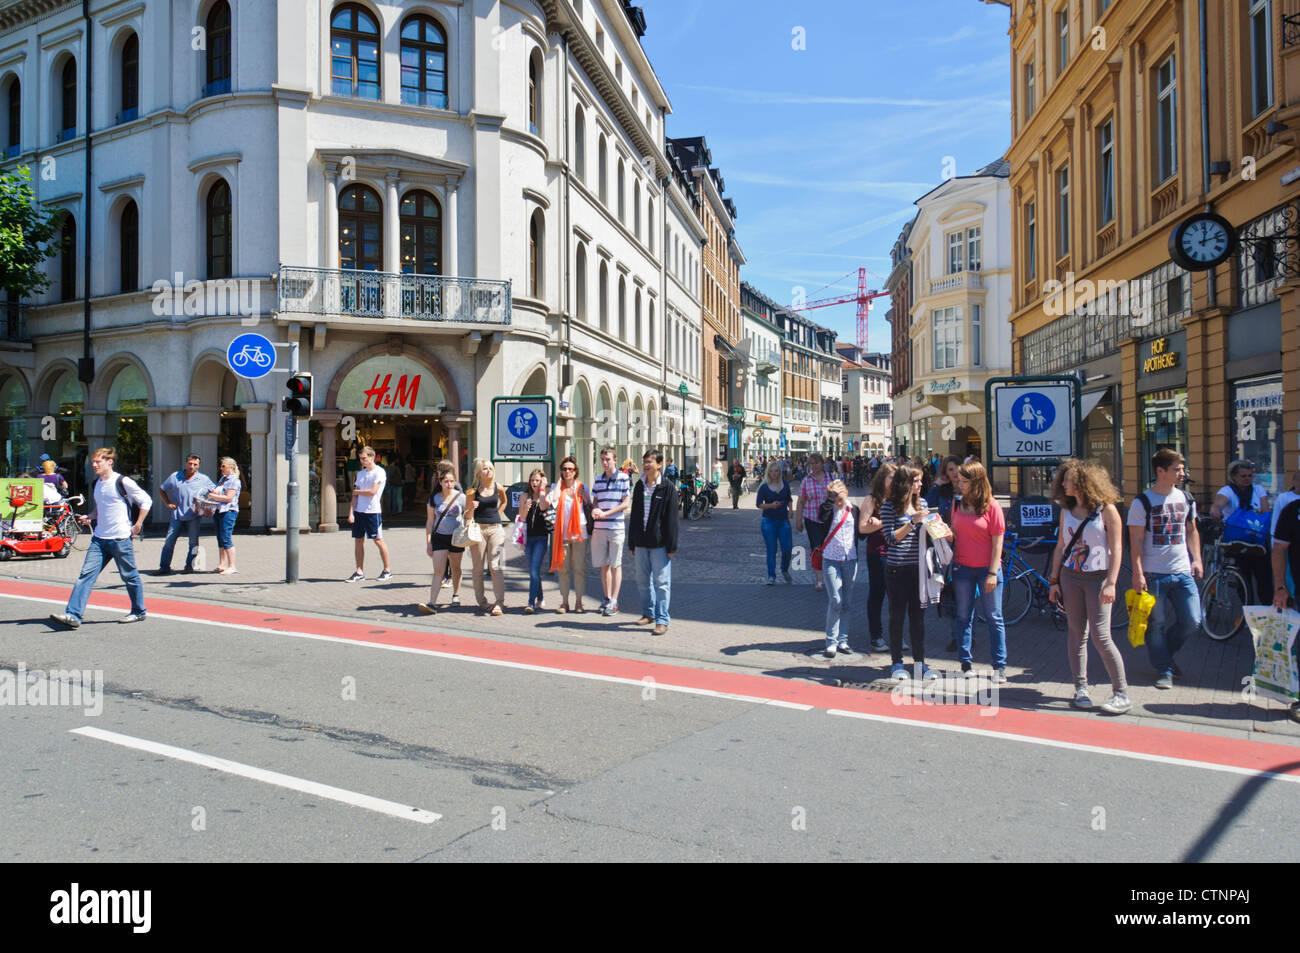 Les piétons sur la rue principale de la vieille ville historique de  Heidelberg Allemagne Europe - H&M fashion shop Photo Stock - Alamy